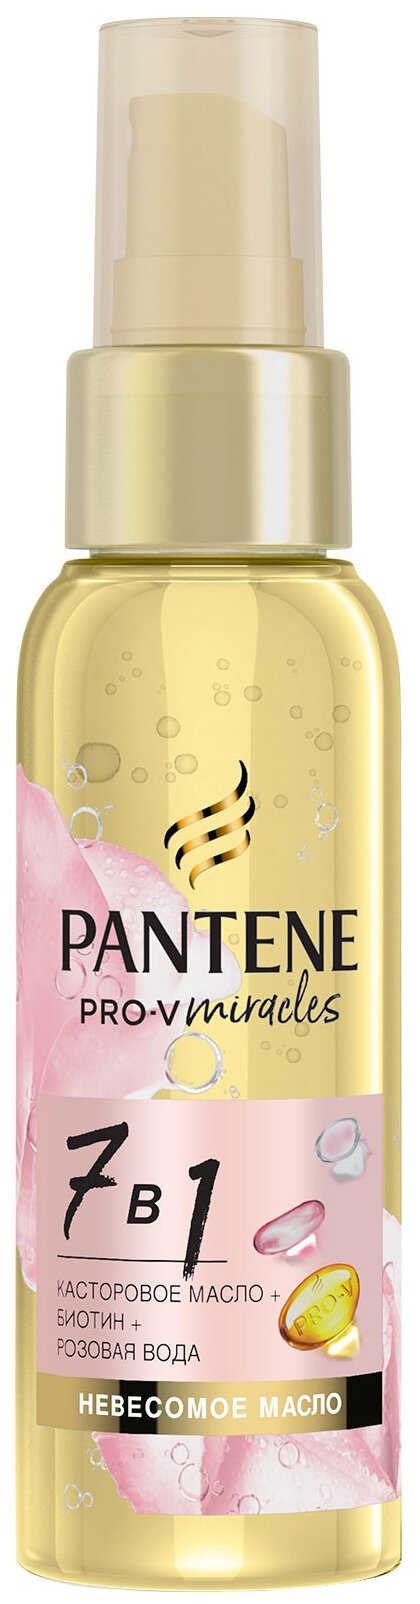 Pantene Pro-V Miracles масло для волос 7 в 1 для ослабленных волос и секущихся кончиков